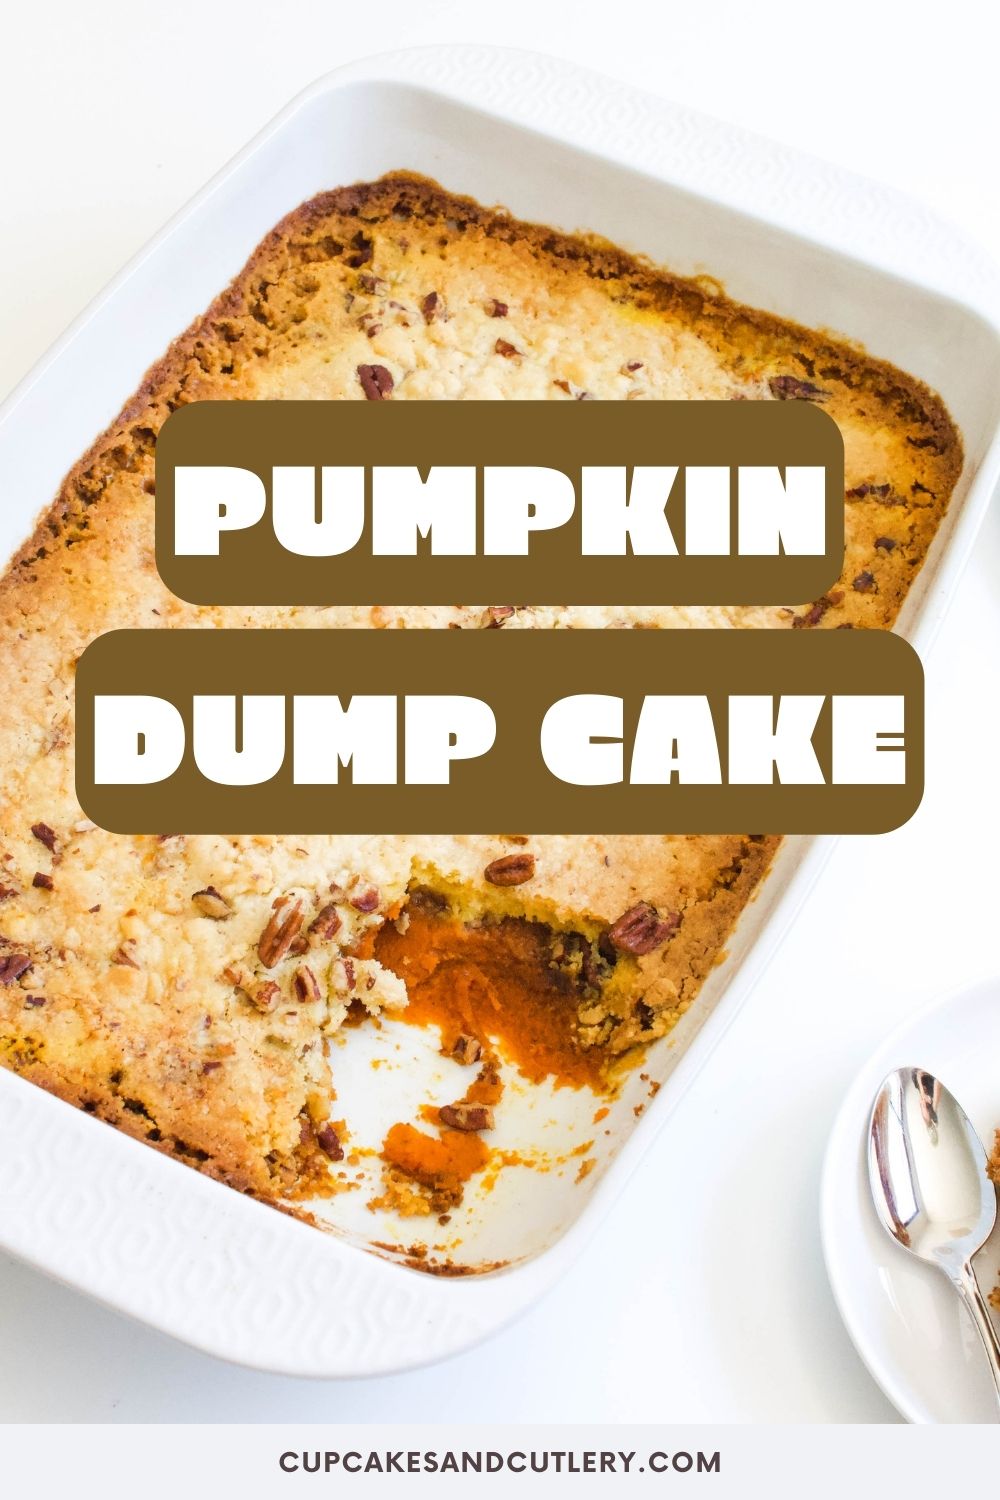 Pumpkin Dump Cake Recipe {Dump and Bake With No Eggs}